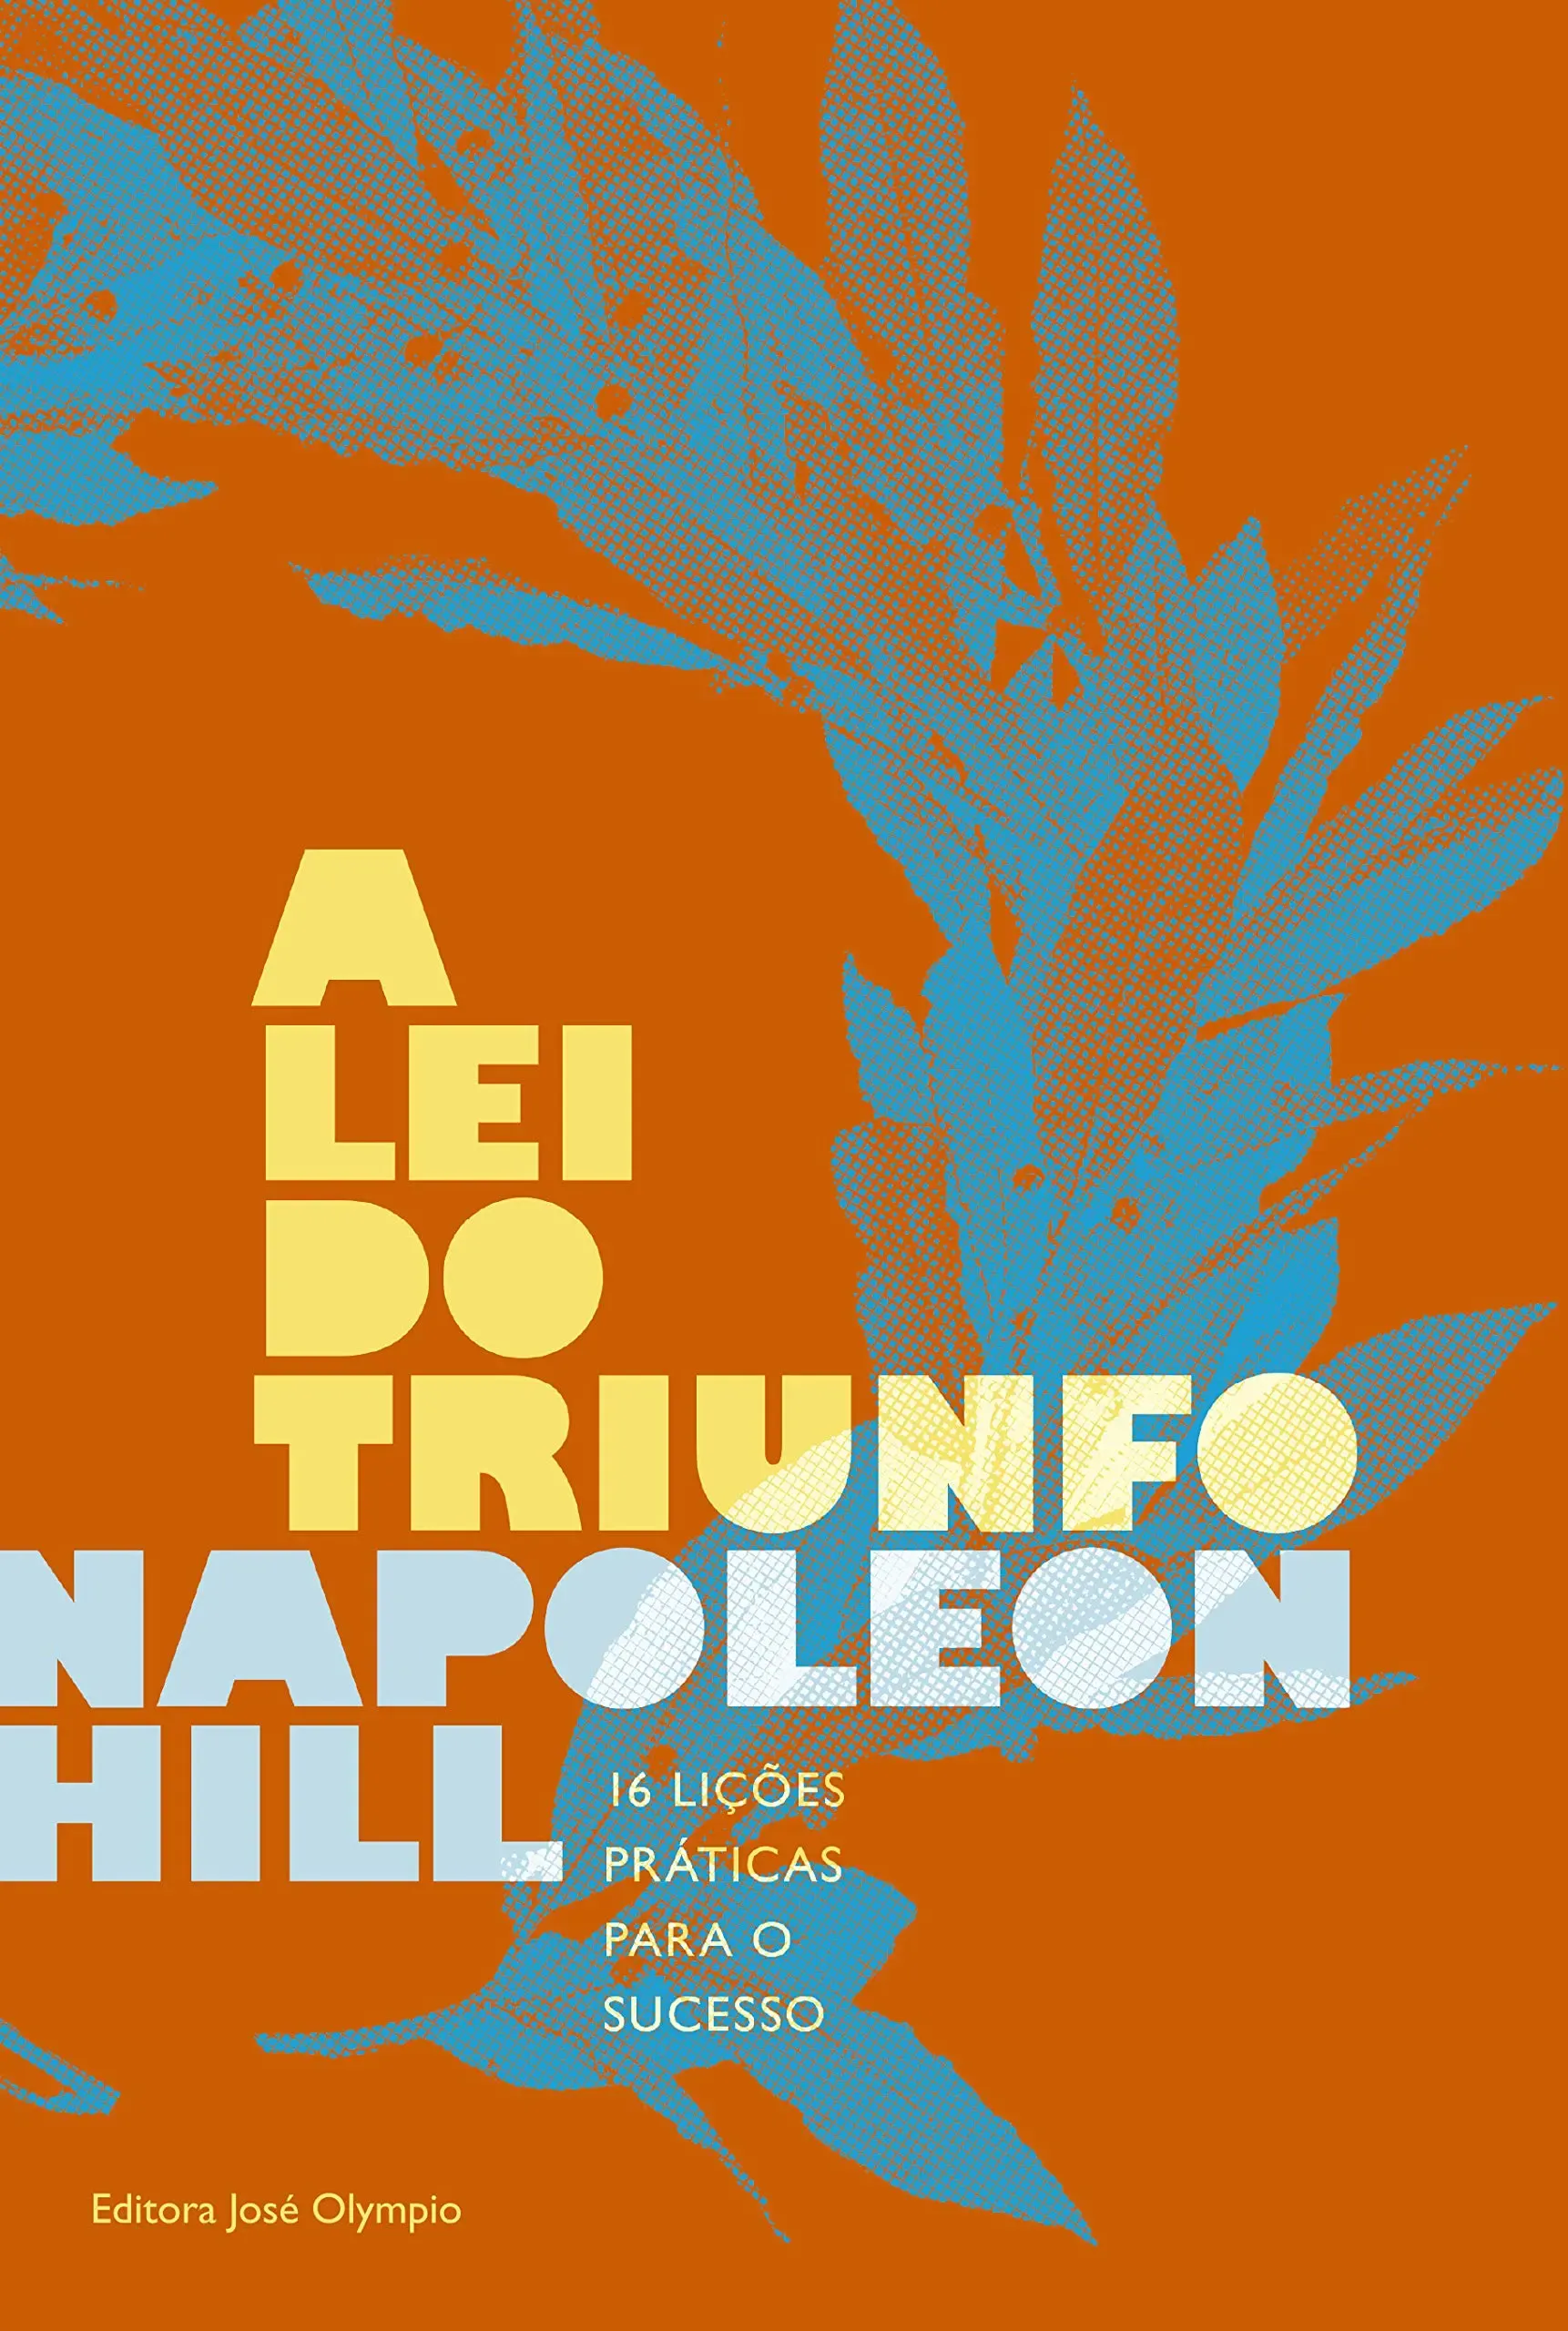 "A Lei do Triunfo" de Napoleon Hill